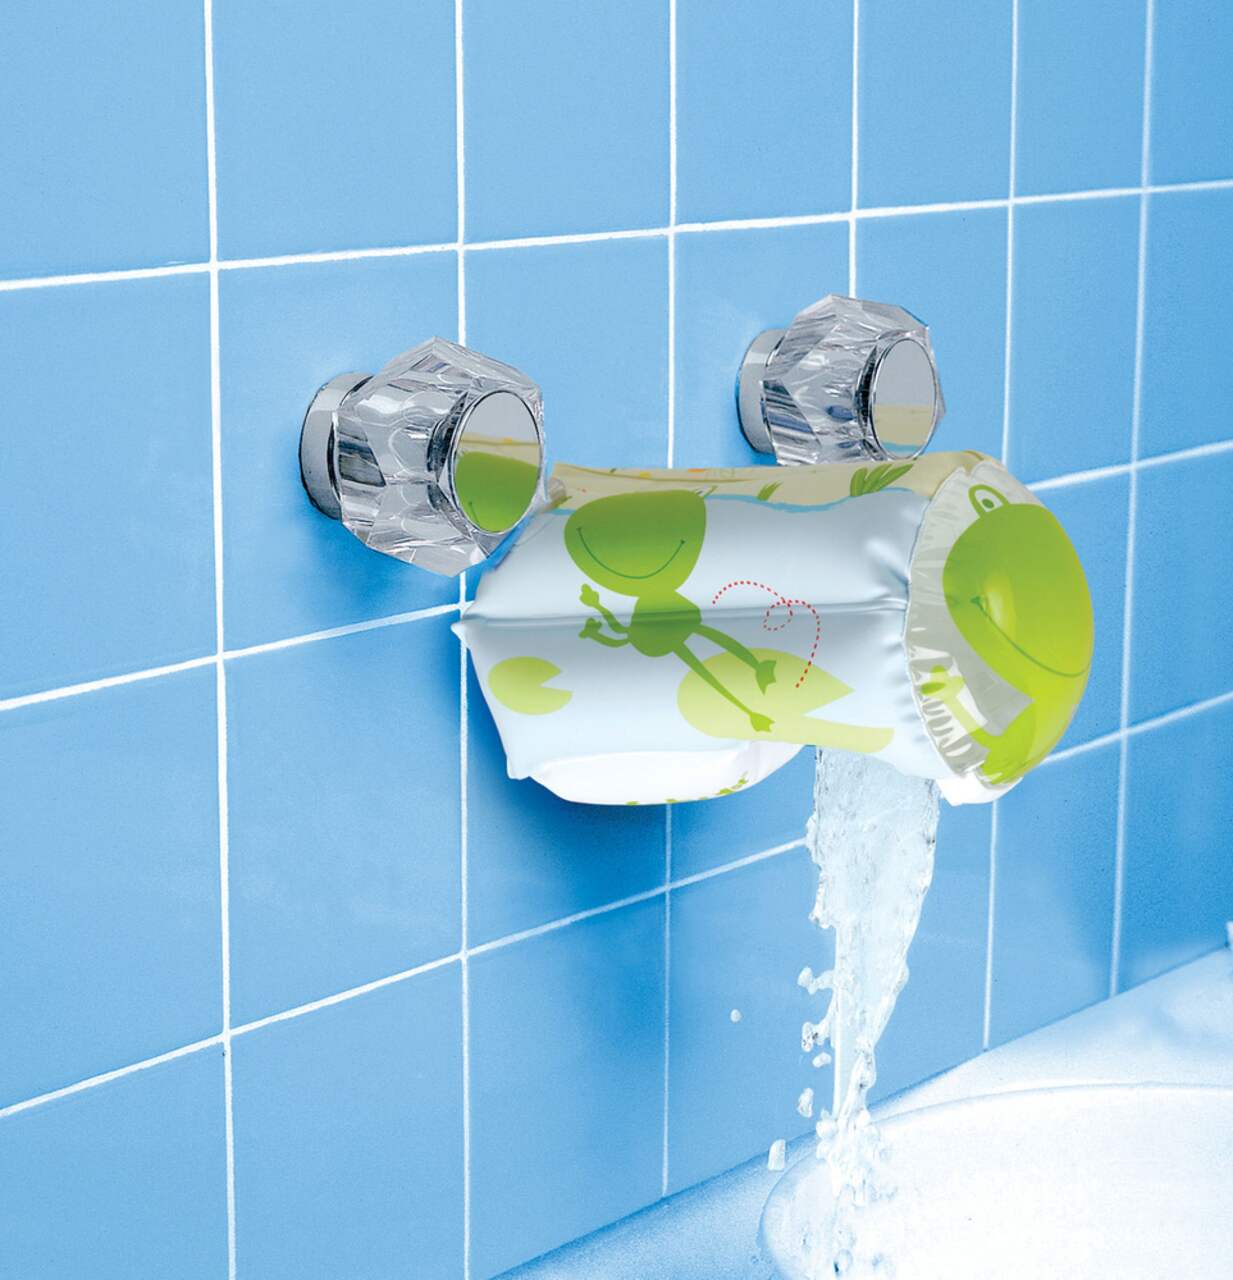 TD® protection robinet baignoire enfant salle de bain bébé sécurité ba –